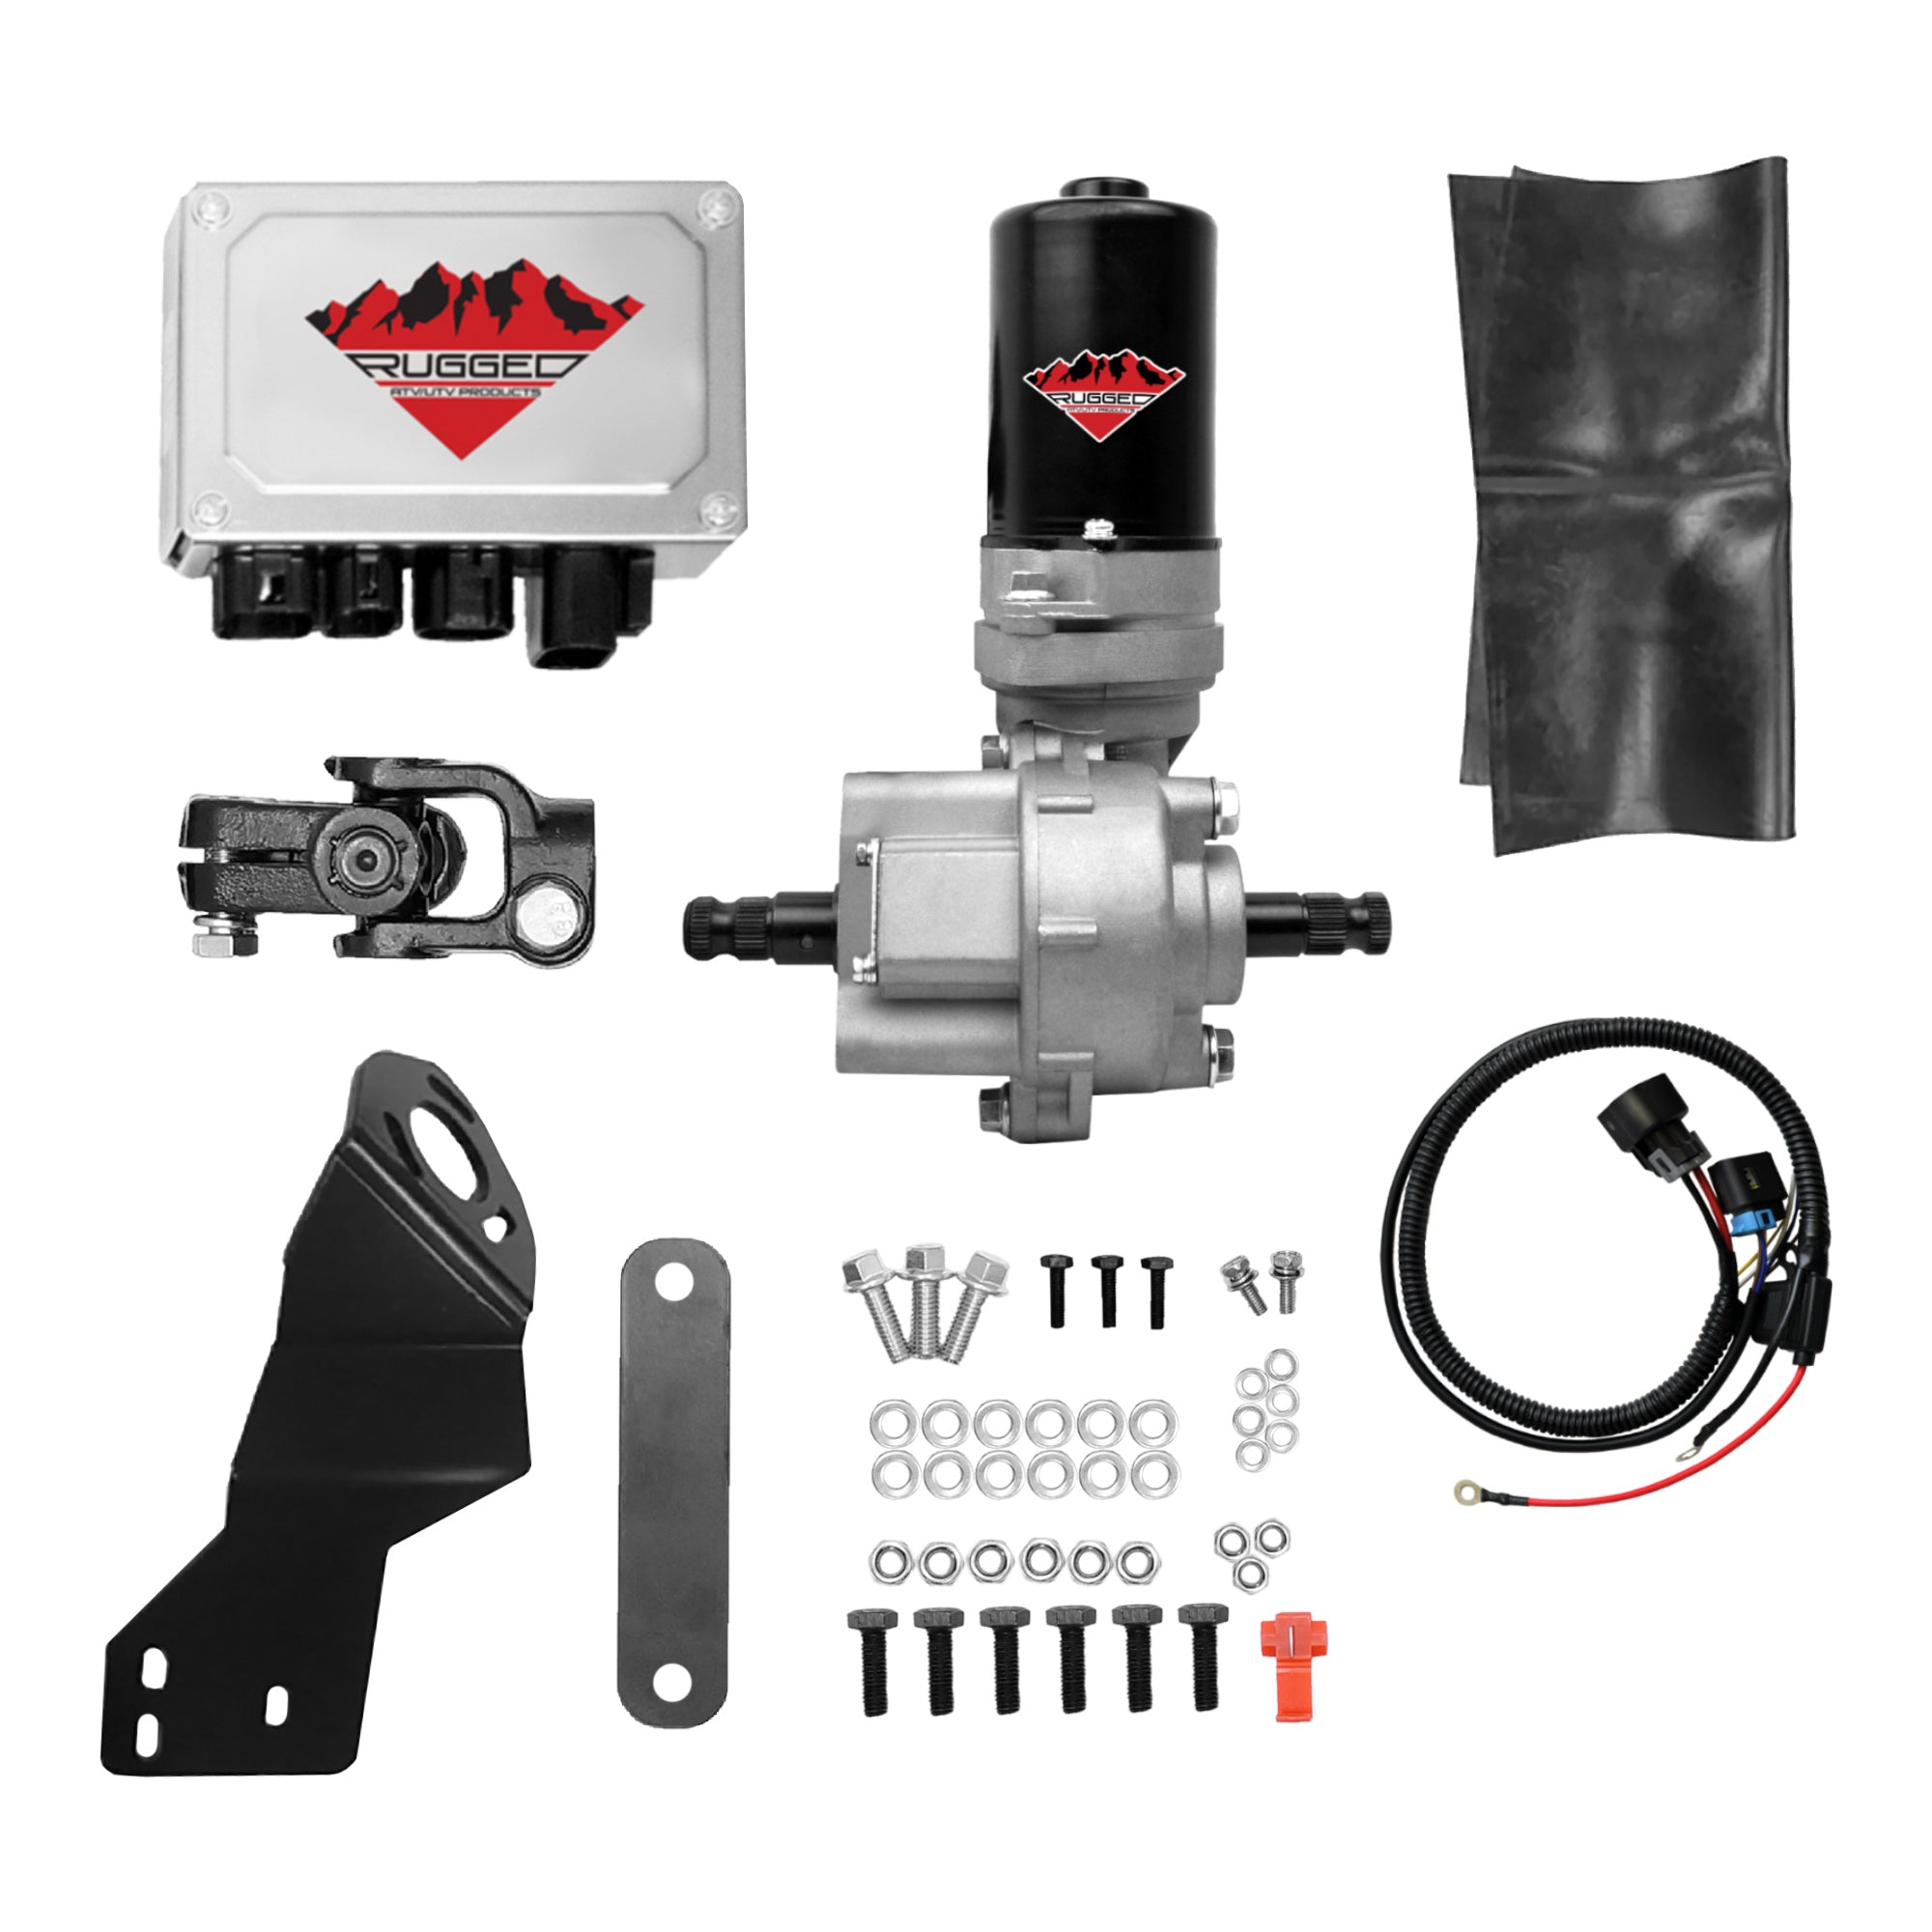 Electric Power Steering Kit for Polaris Ranger 500 